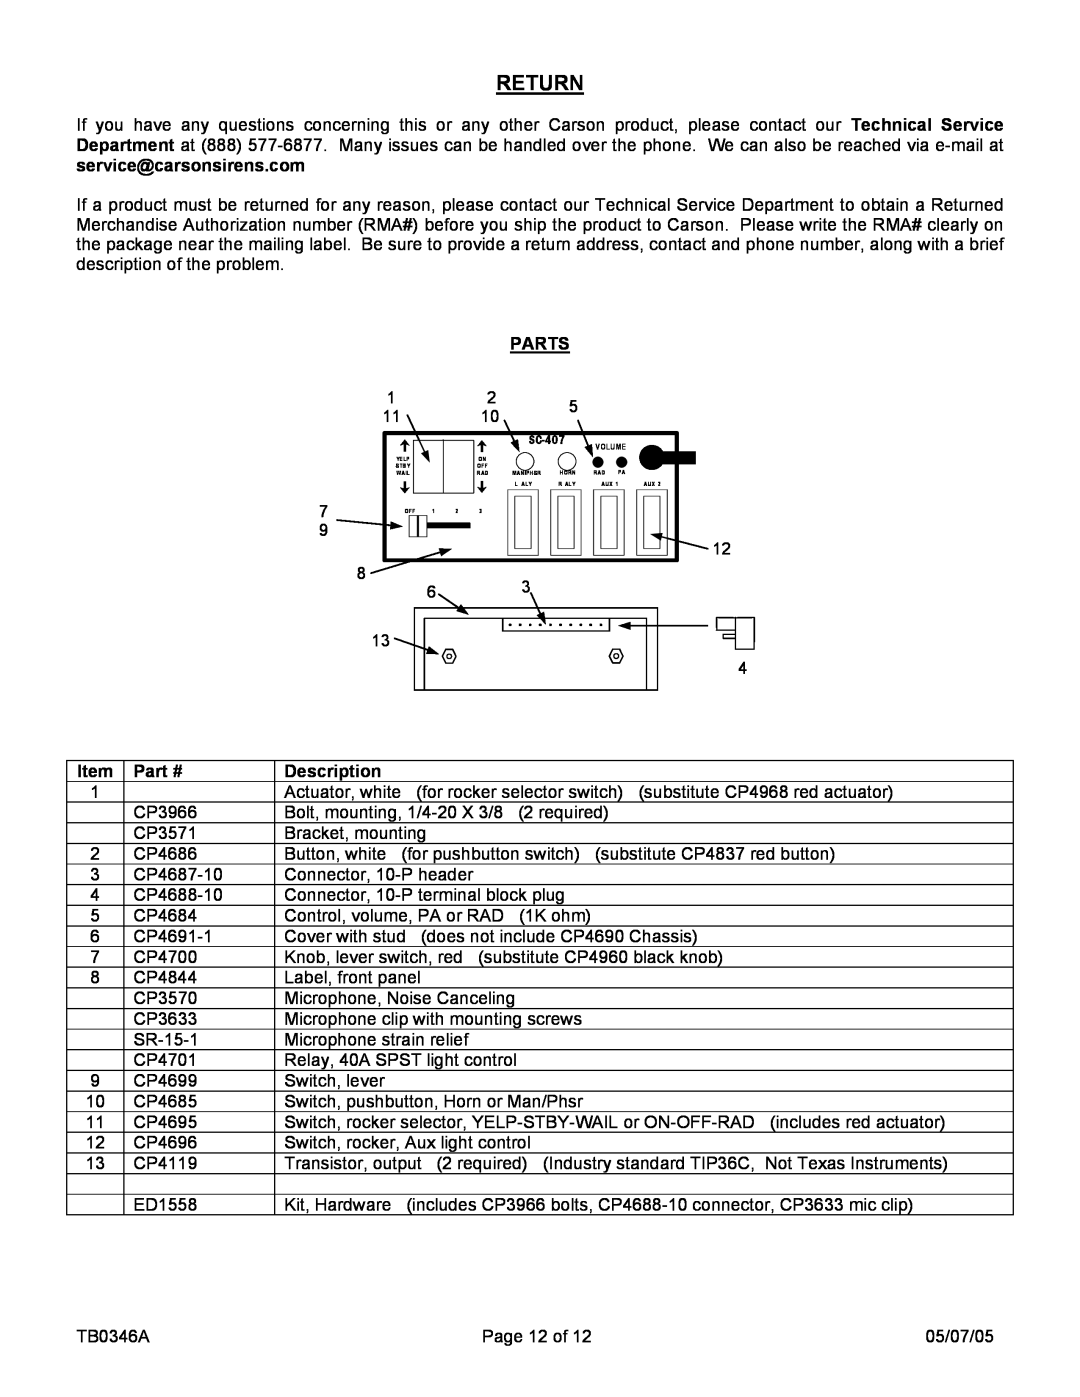 Carson SC-407-10 manual Return, Parts, Description 